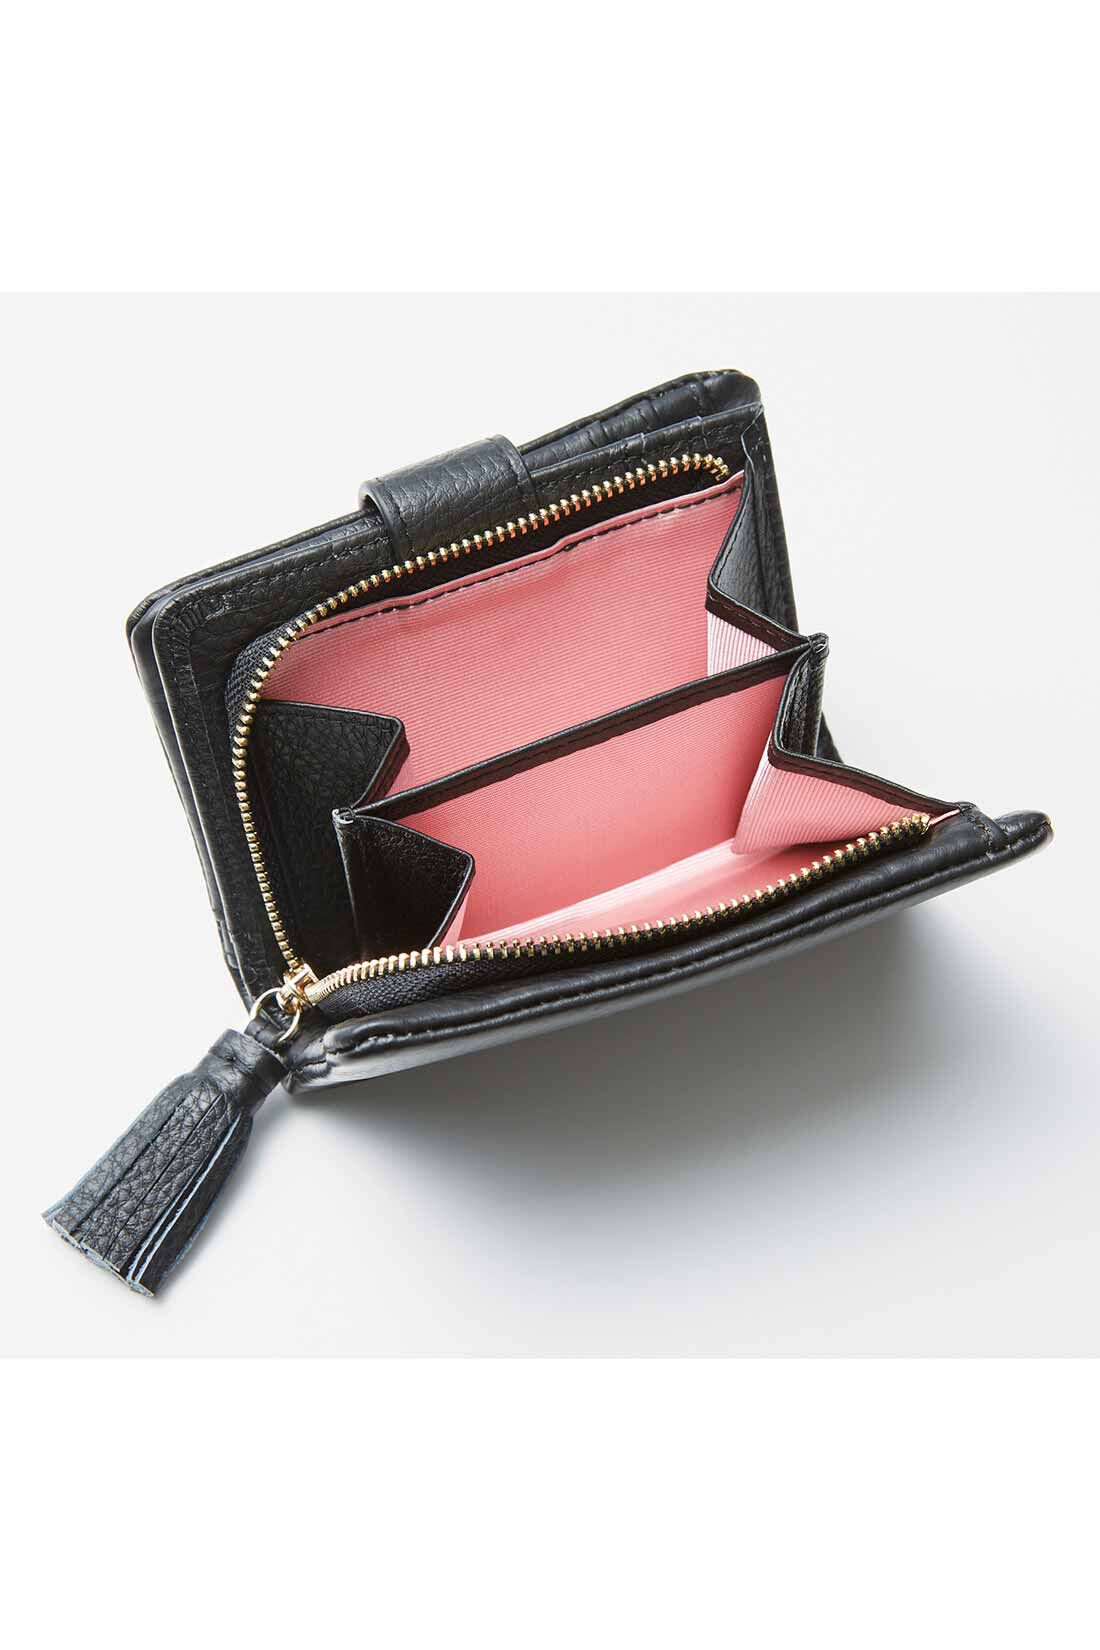 イディット|IEDIT[イディット]　くったり本革素材できれいめ二つ折り財布〈オレンジ〉|大きく開くサイドまち付きで、小銭の出し入れもらくらく。内側は気分が上がるカラーに。